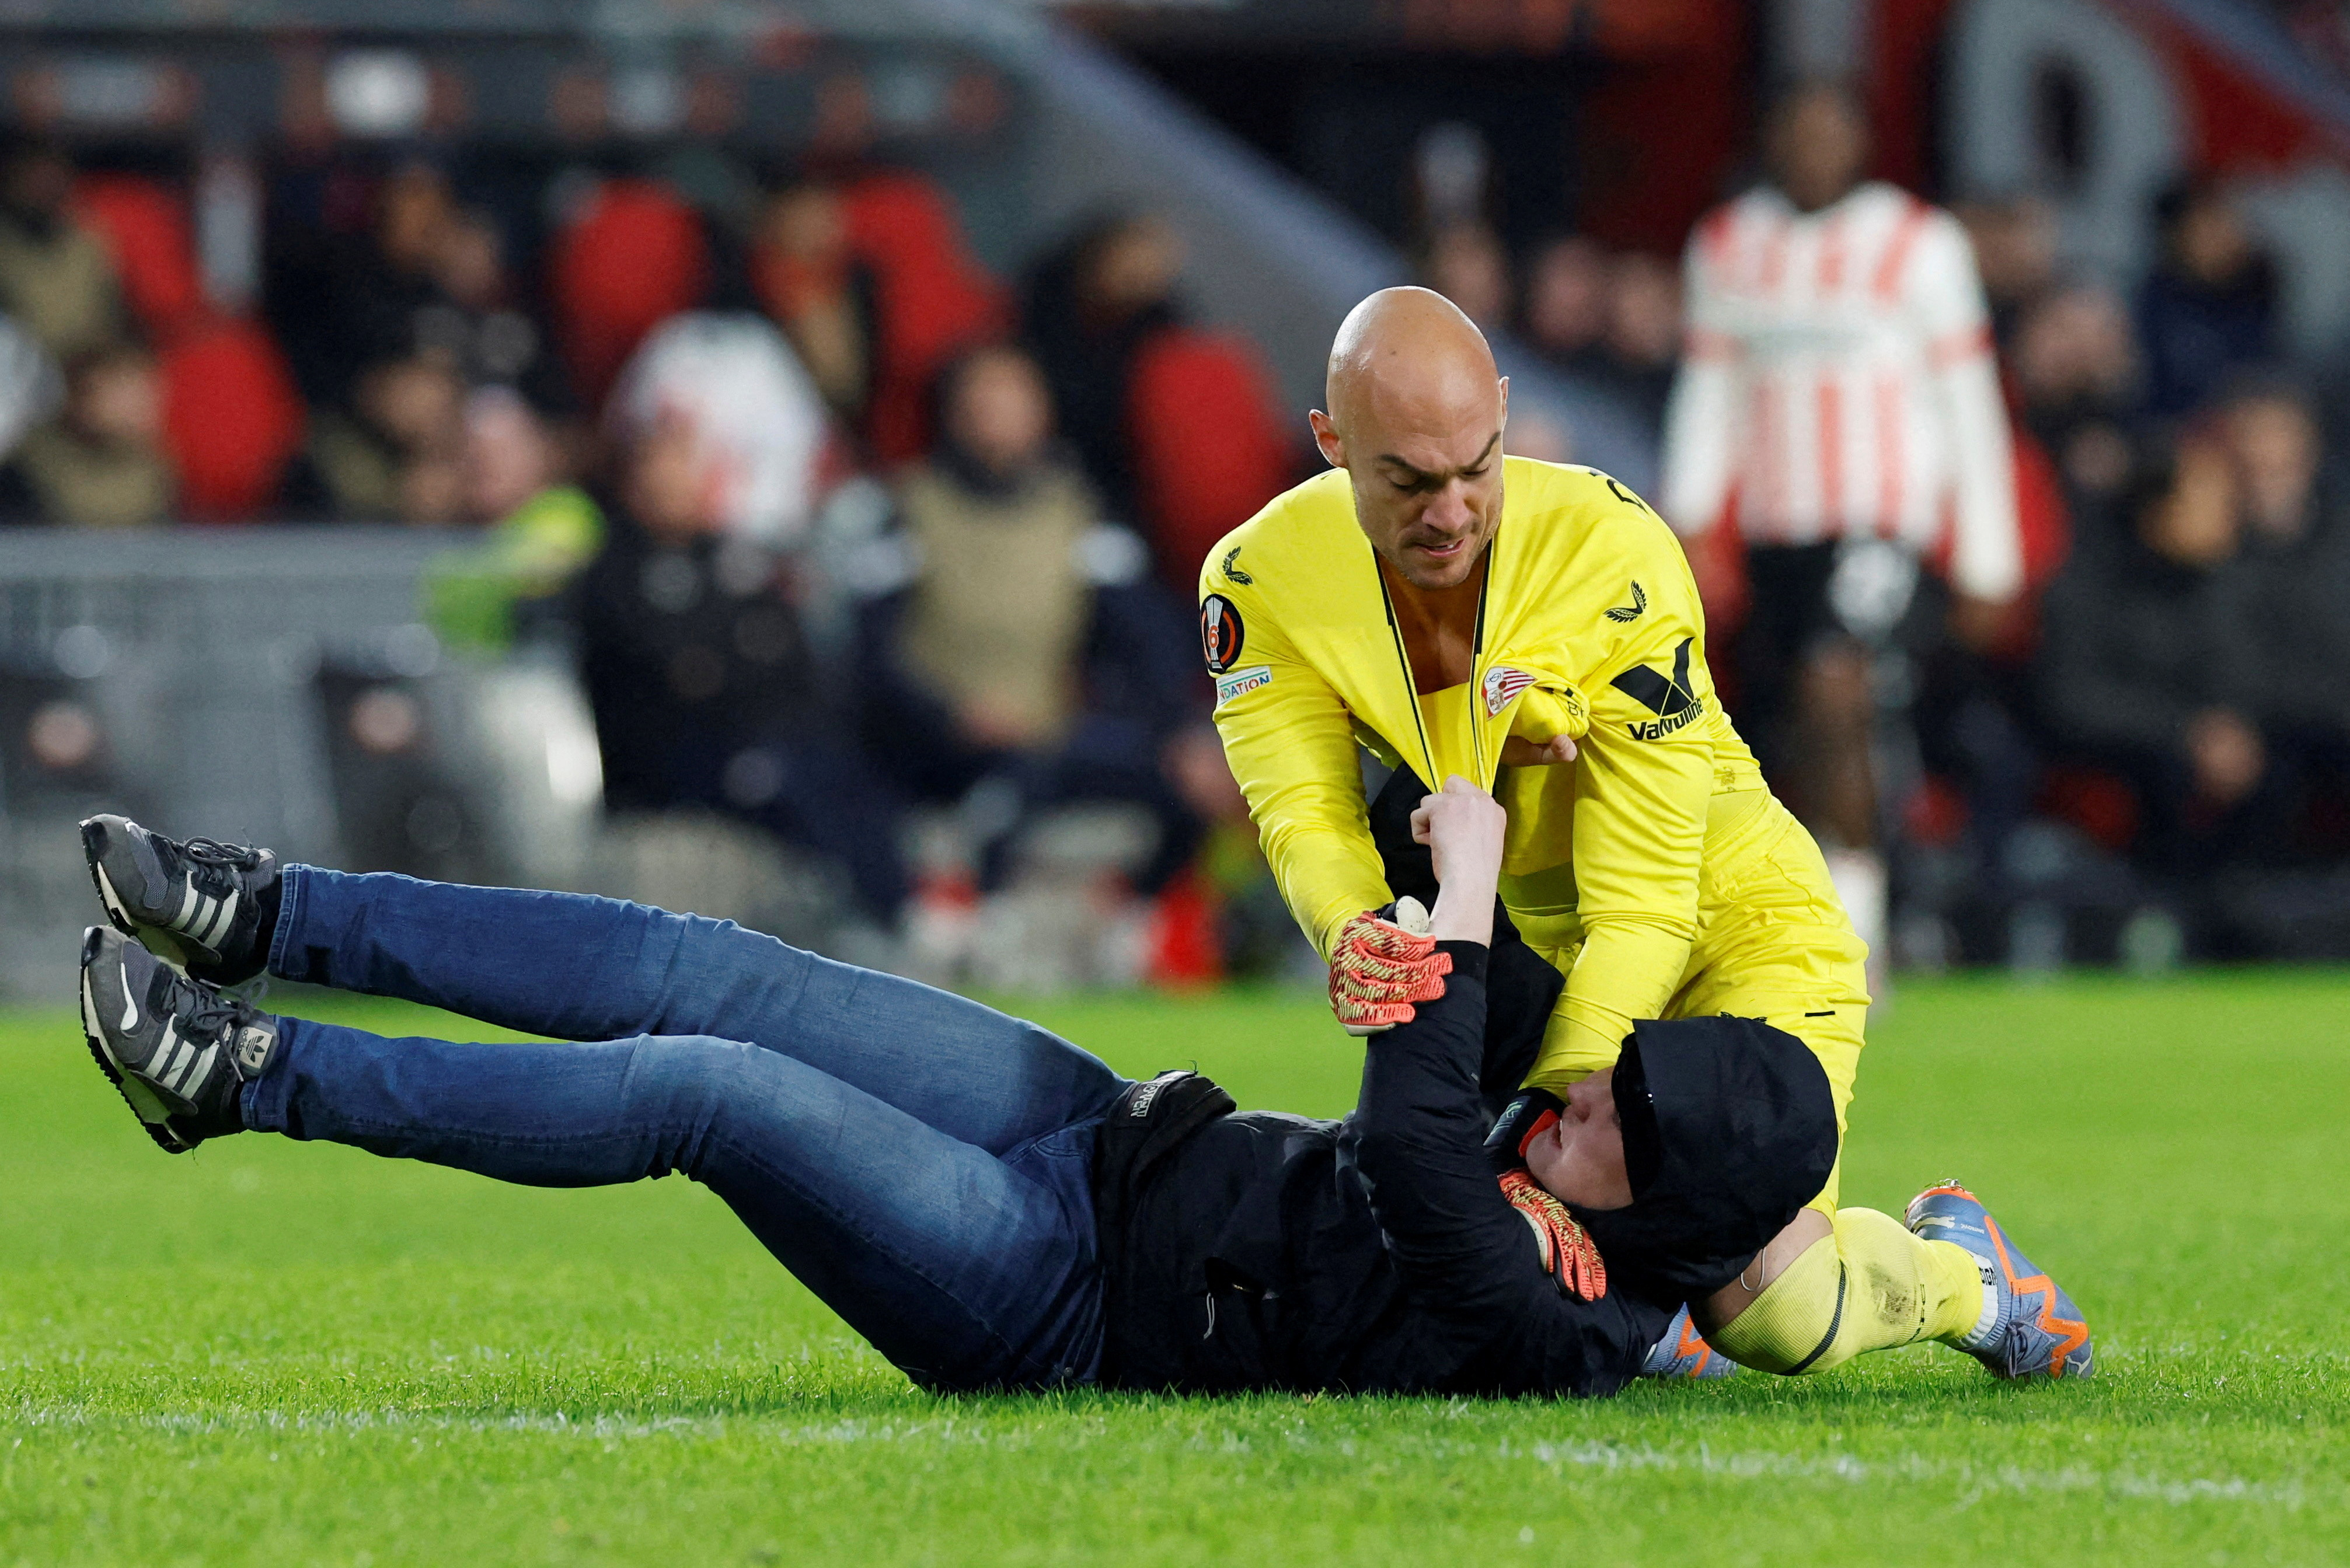 Marko Dmitrovic, arquero del Sevilla redujo al invasor que intentó agredirlo en el partido de Europa League ante PSV (REUTERS/Piroschka Van De Wouw)